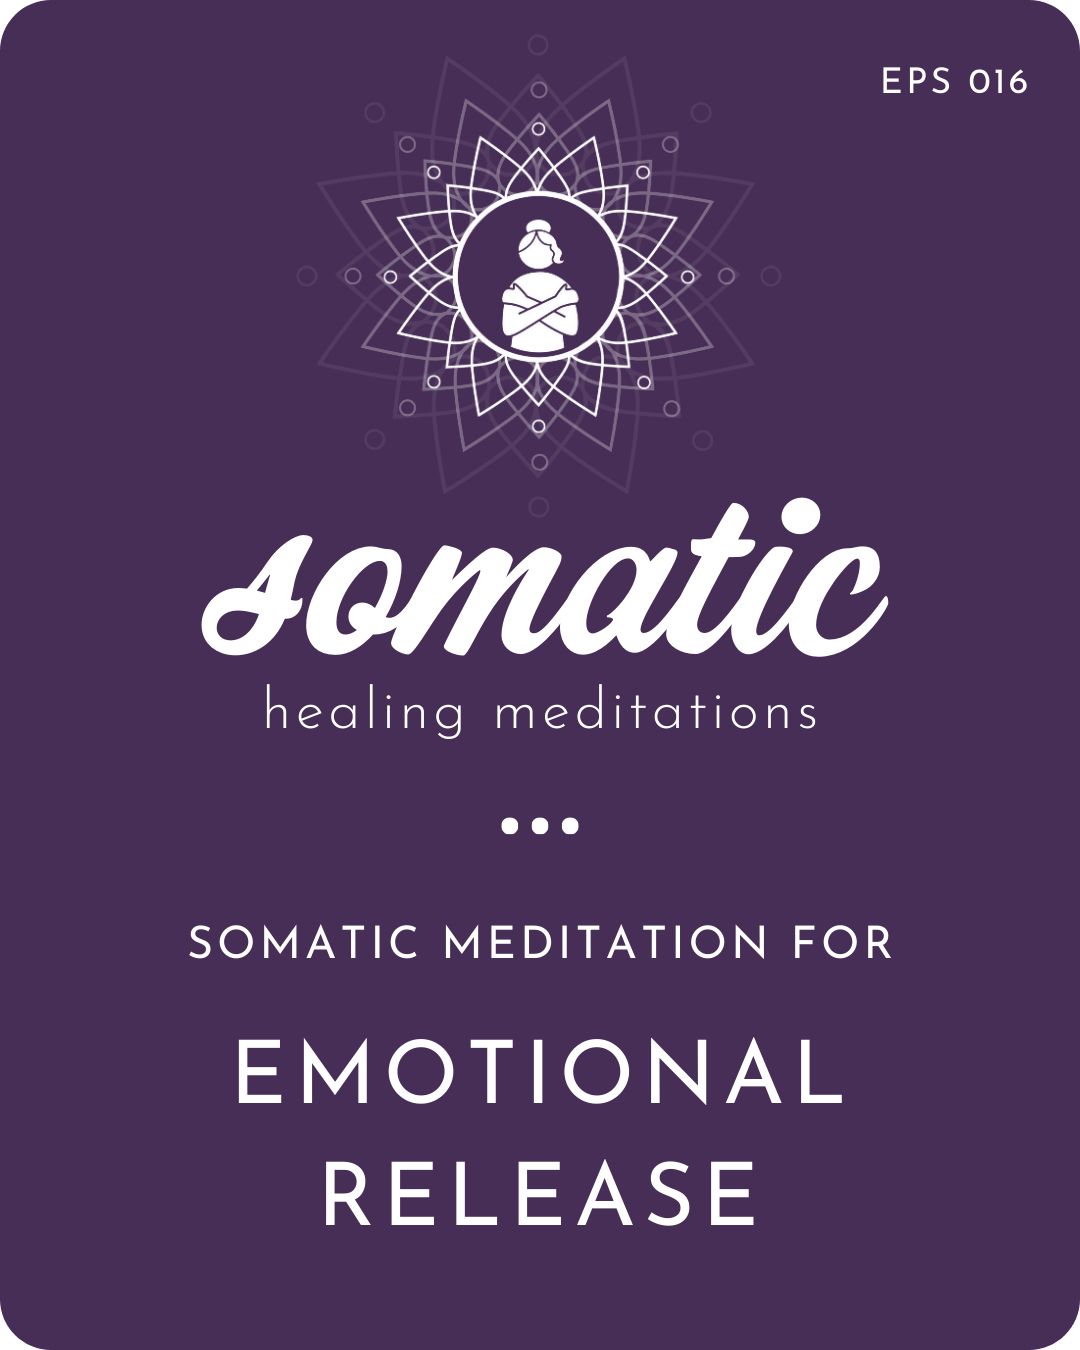 Somatic Meditation for Emotional Release